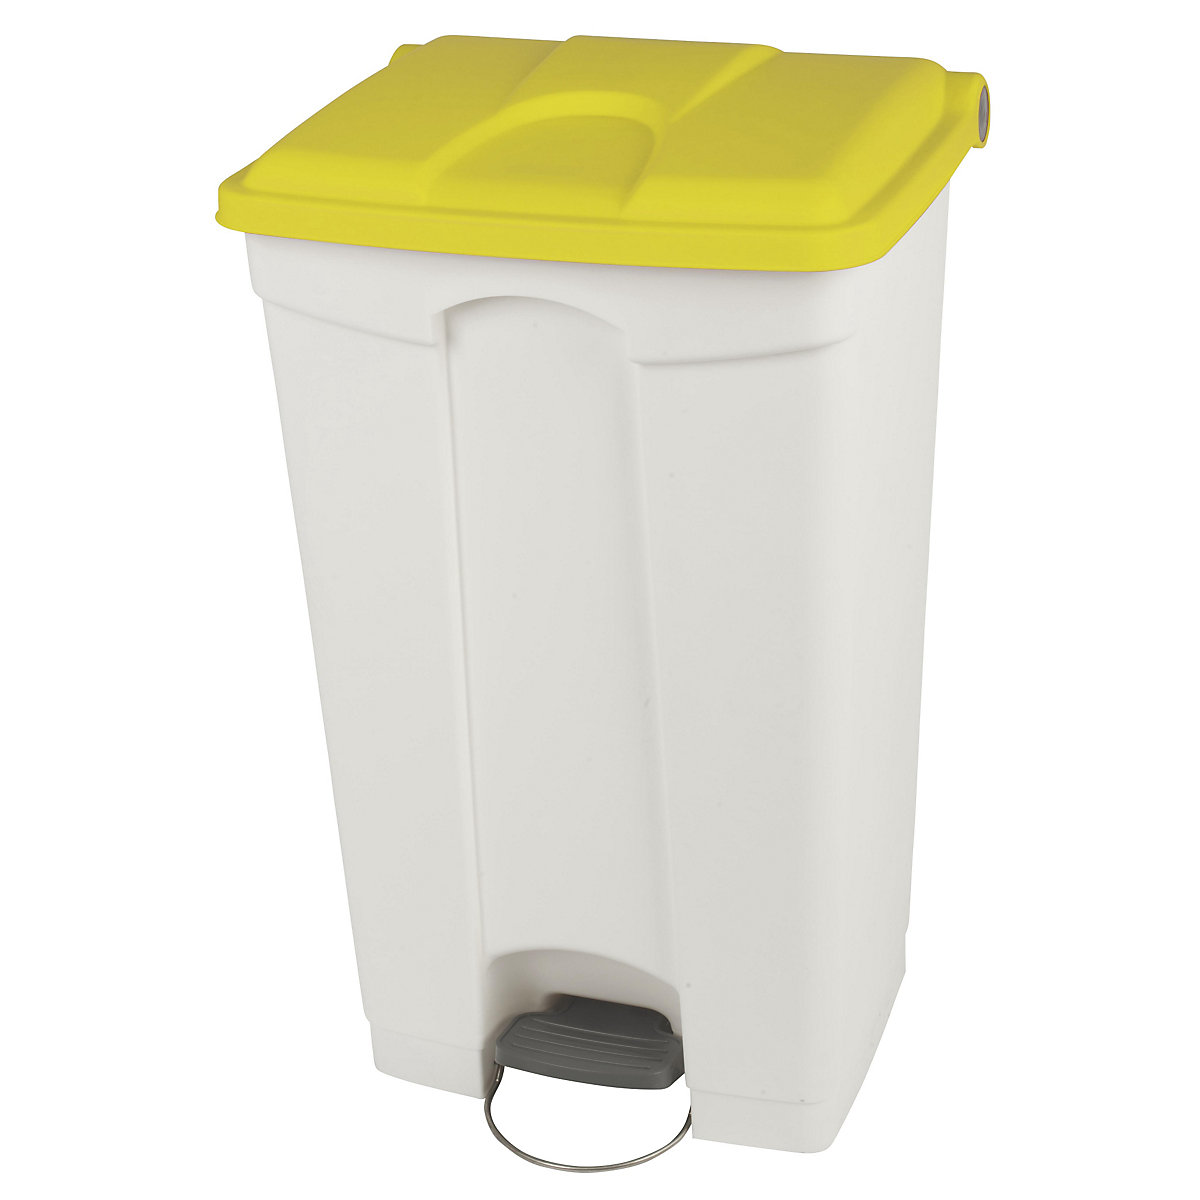 Coletor de lixo com pedal, volume 90 l, LxAxP 505 x 790 x 410 mm, branco, tampa amarela-9